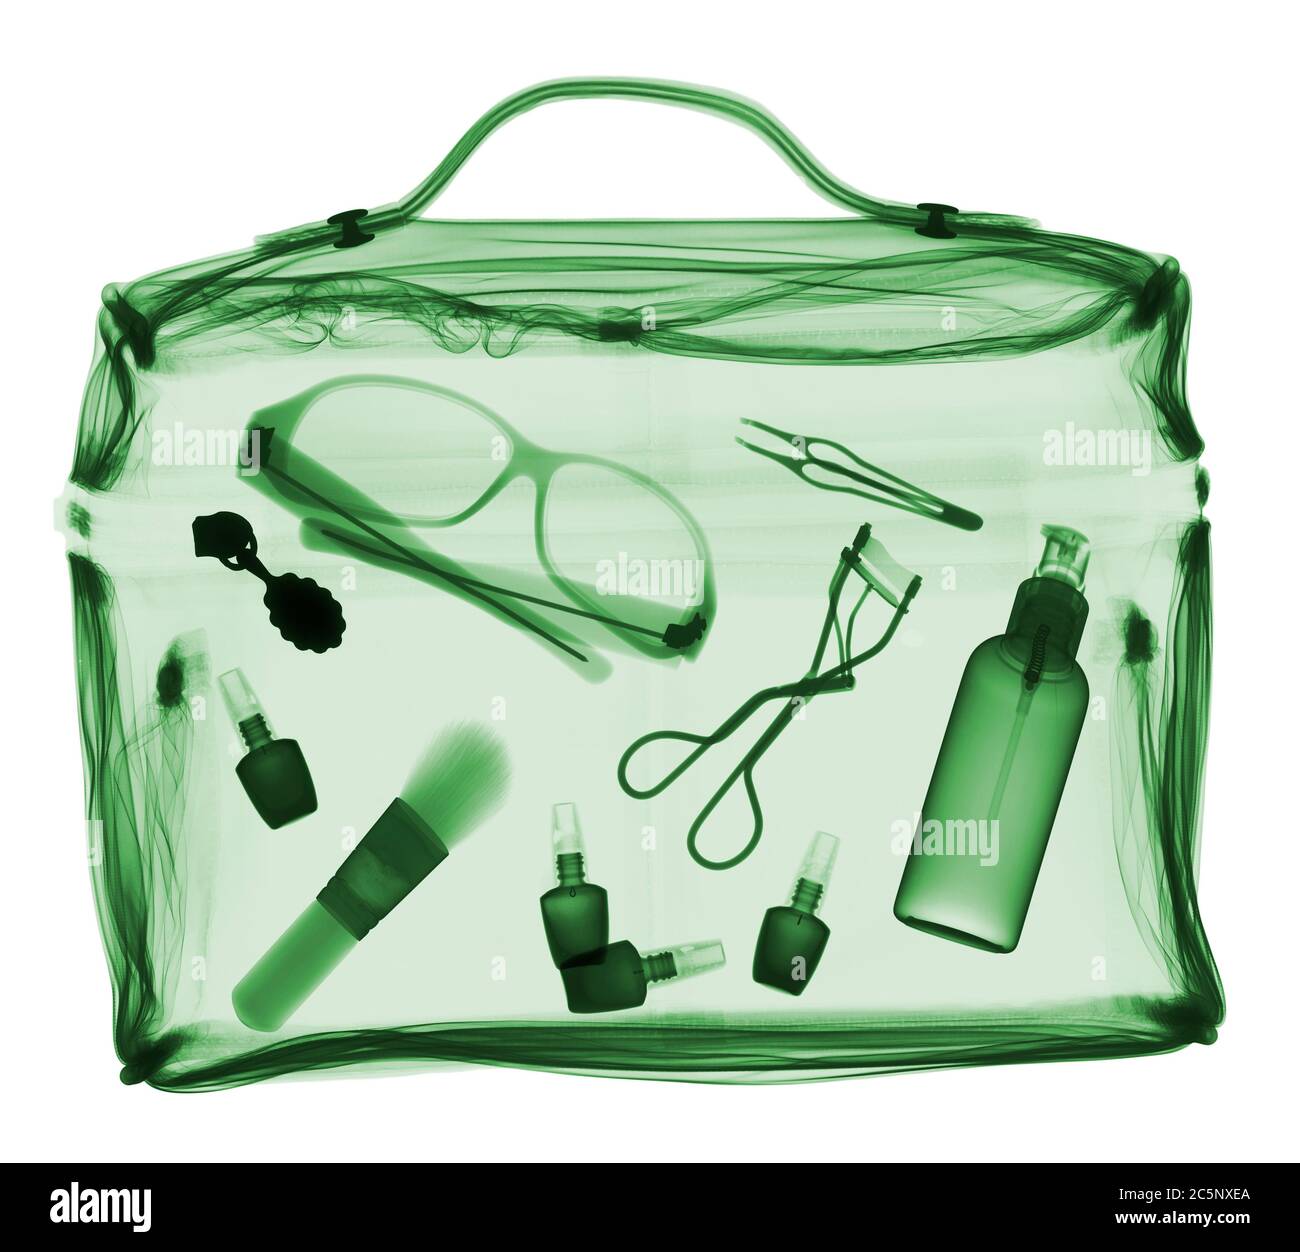 Divers accessoires personnels dans le sac, rayons X de couleur. Banque D'Images